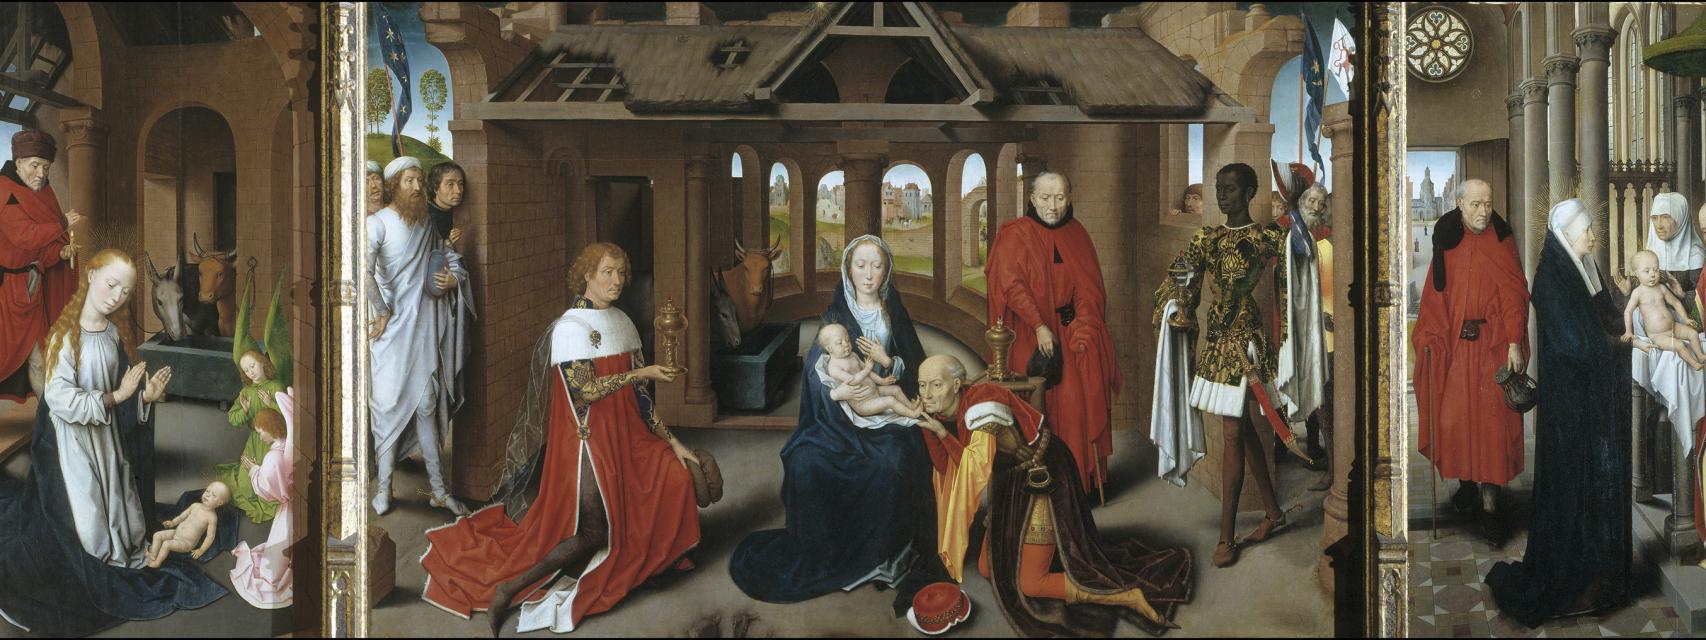 La Adoración de los Magos (1479-80), pintado por el alemán Hans Memlin.